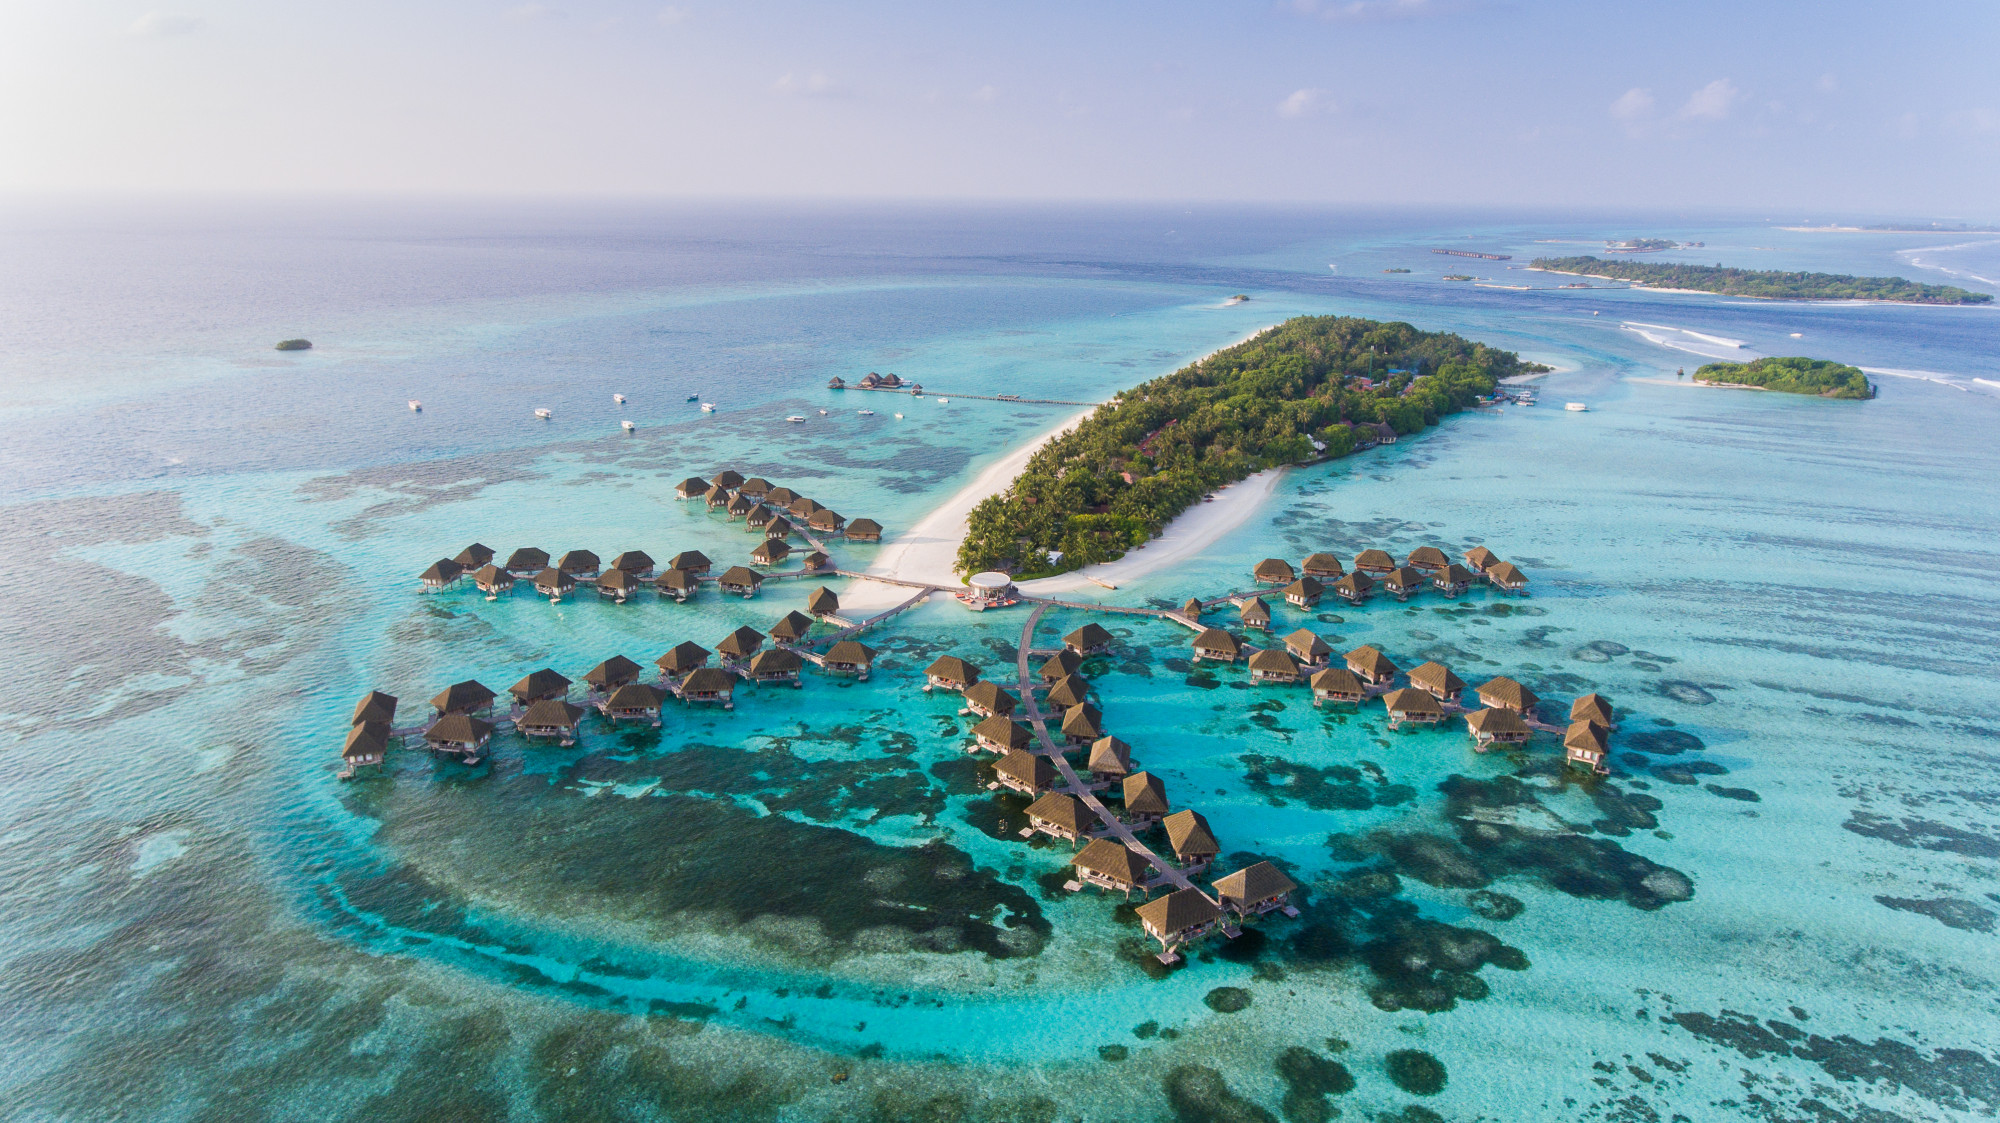  1.200 hòn đảo có màu trắng như cát, nước có màu xanh thẳm khiến tất cả các vùng biển khác chìm trong bóng râm. Quốc gia Maldives ở Ấn Độ Dương đã phát triển thành điểm nóng nhiệt đới hàng đầu thế giới là có lý do.  Trên hết, có rất nhiều bãi biển để dạo quanh, với hơn 100 khu nghỉ dưỡng tư nhân và những nhà nghỉ thân thiện, giá cả phải chăng xung quanh đảo san hô Male và Ari. Nhâm nhi một ly cocktail, bơi lội hoặc lặn đến một số rạn san hô đẹp nhất hành tinh, nơi những đàn cá quét qua và cá mập ẩn mình dưới đáy sâu.